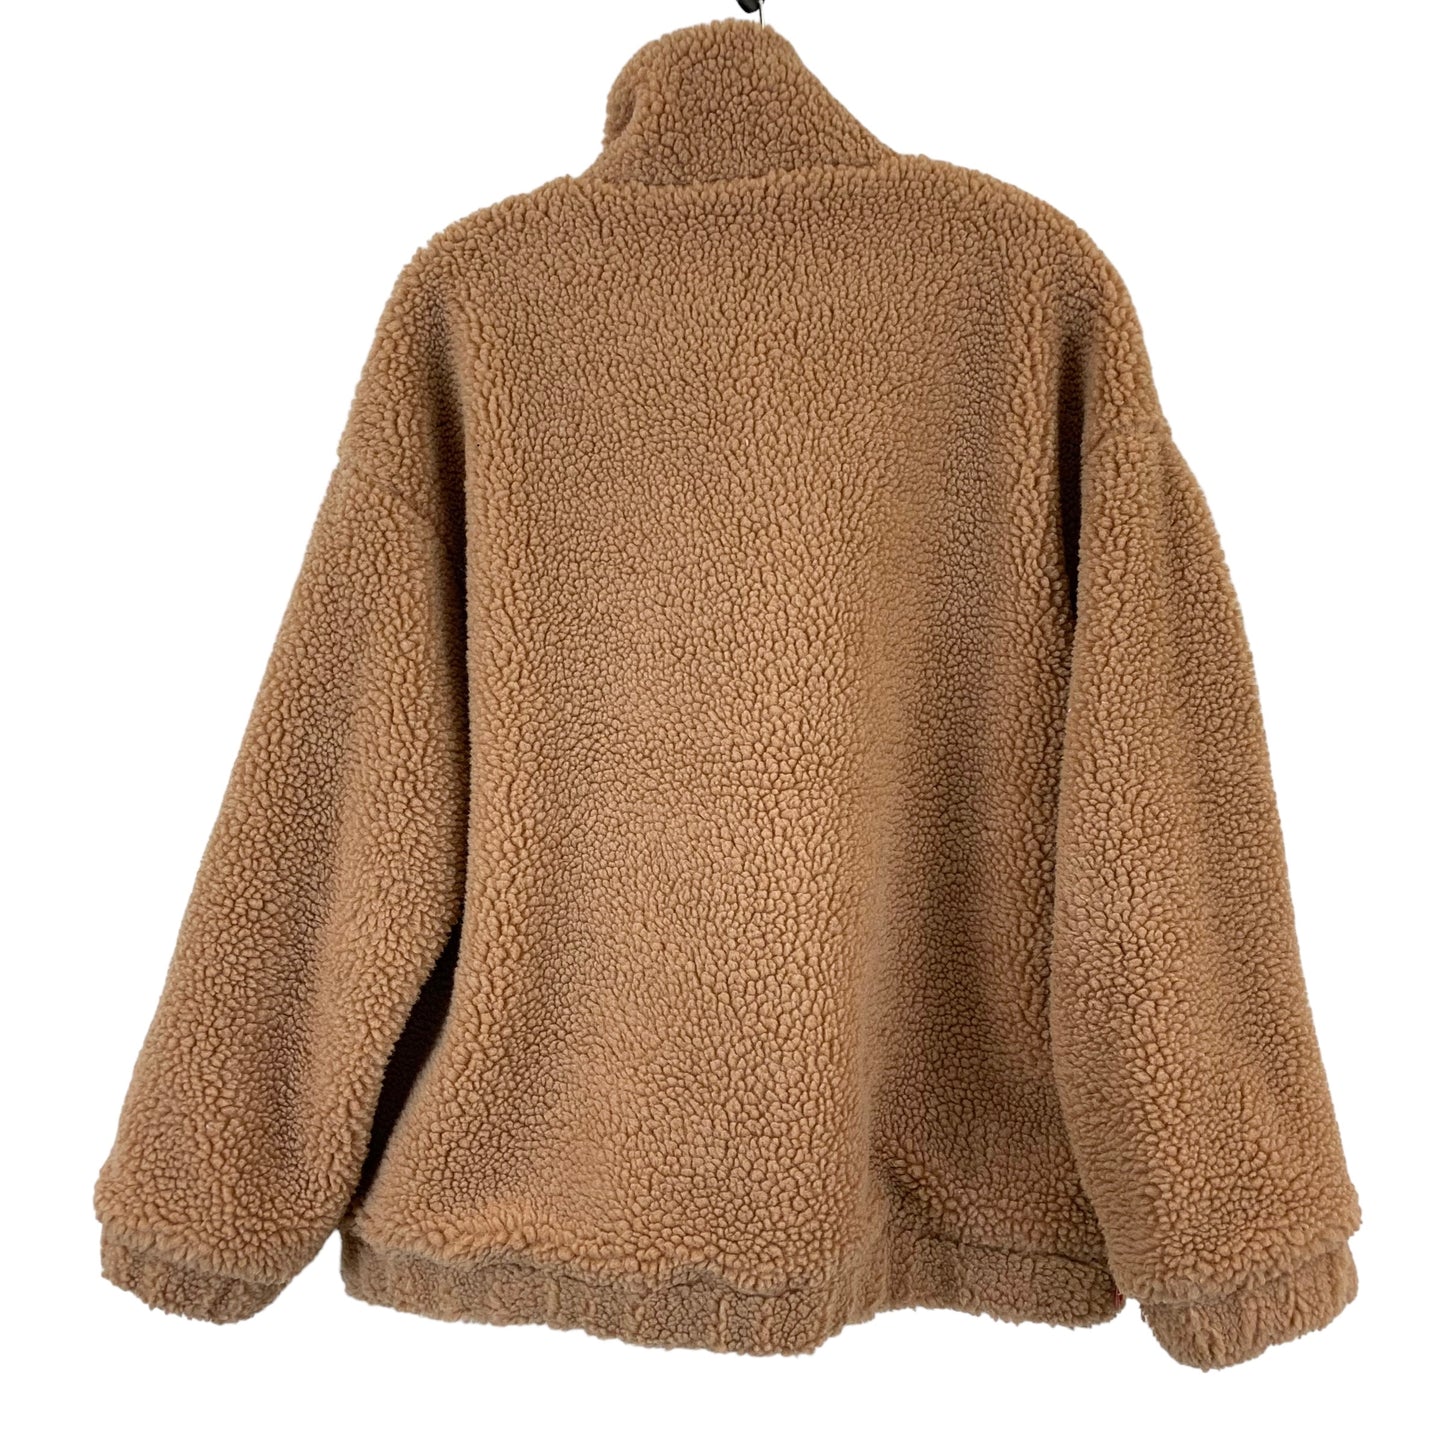 Jacket Faux Fur & Sherpa By KOOOSIN  Size: Xxl